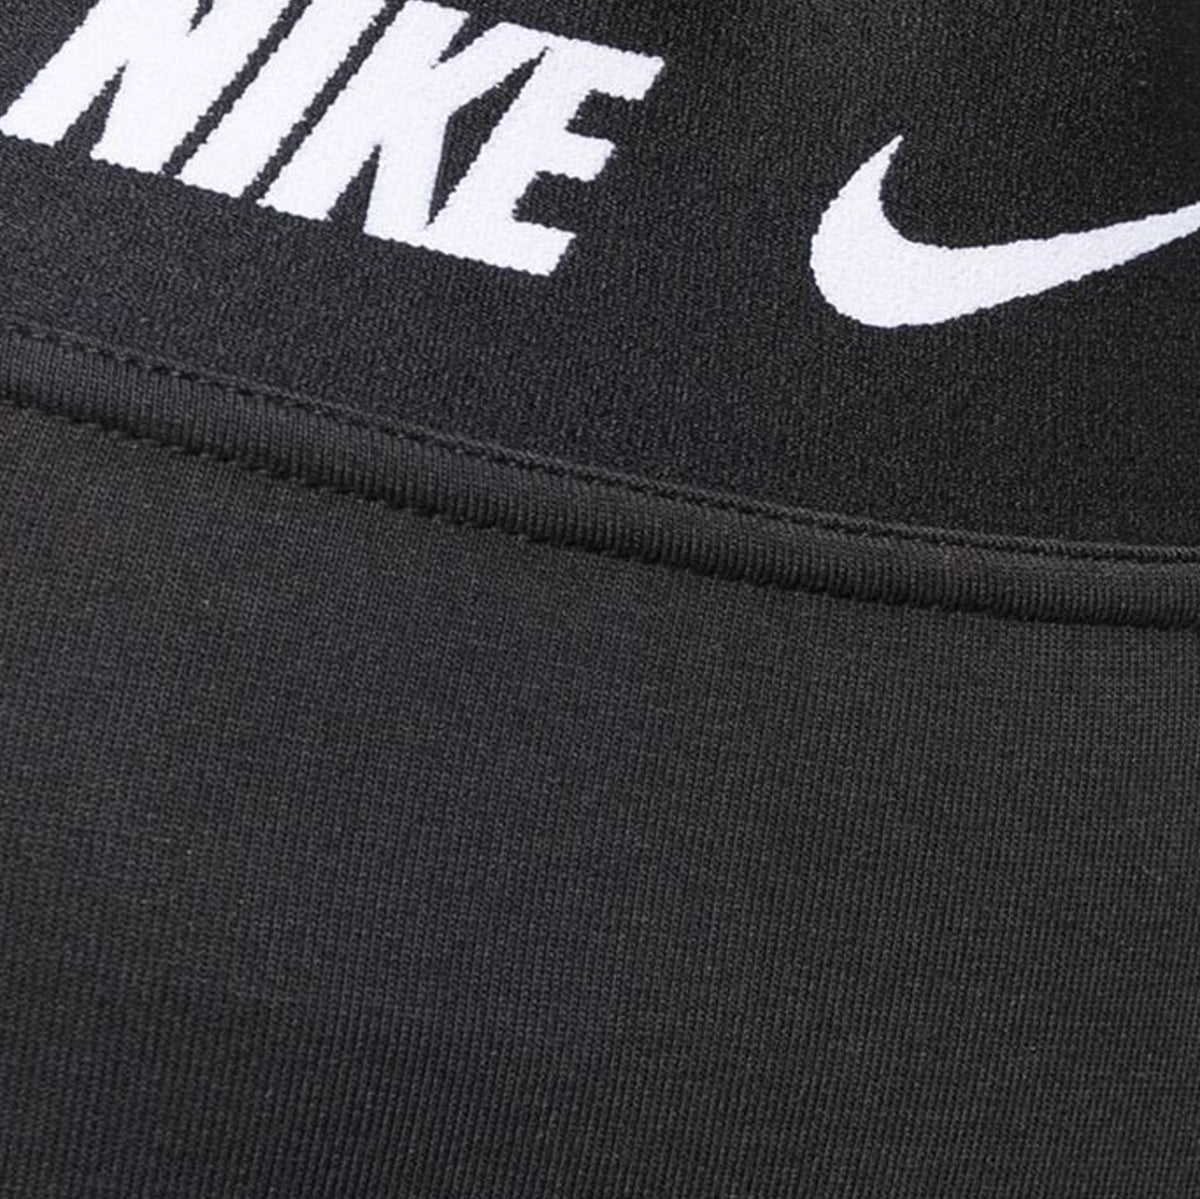 Nike Repeat Tape high-rise leggings in black